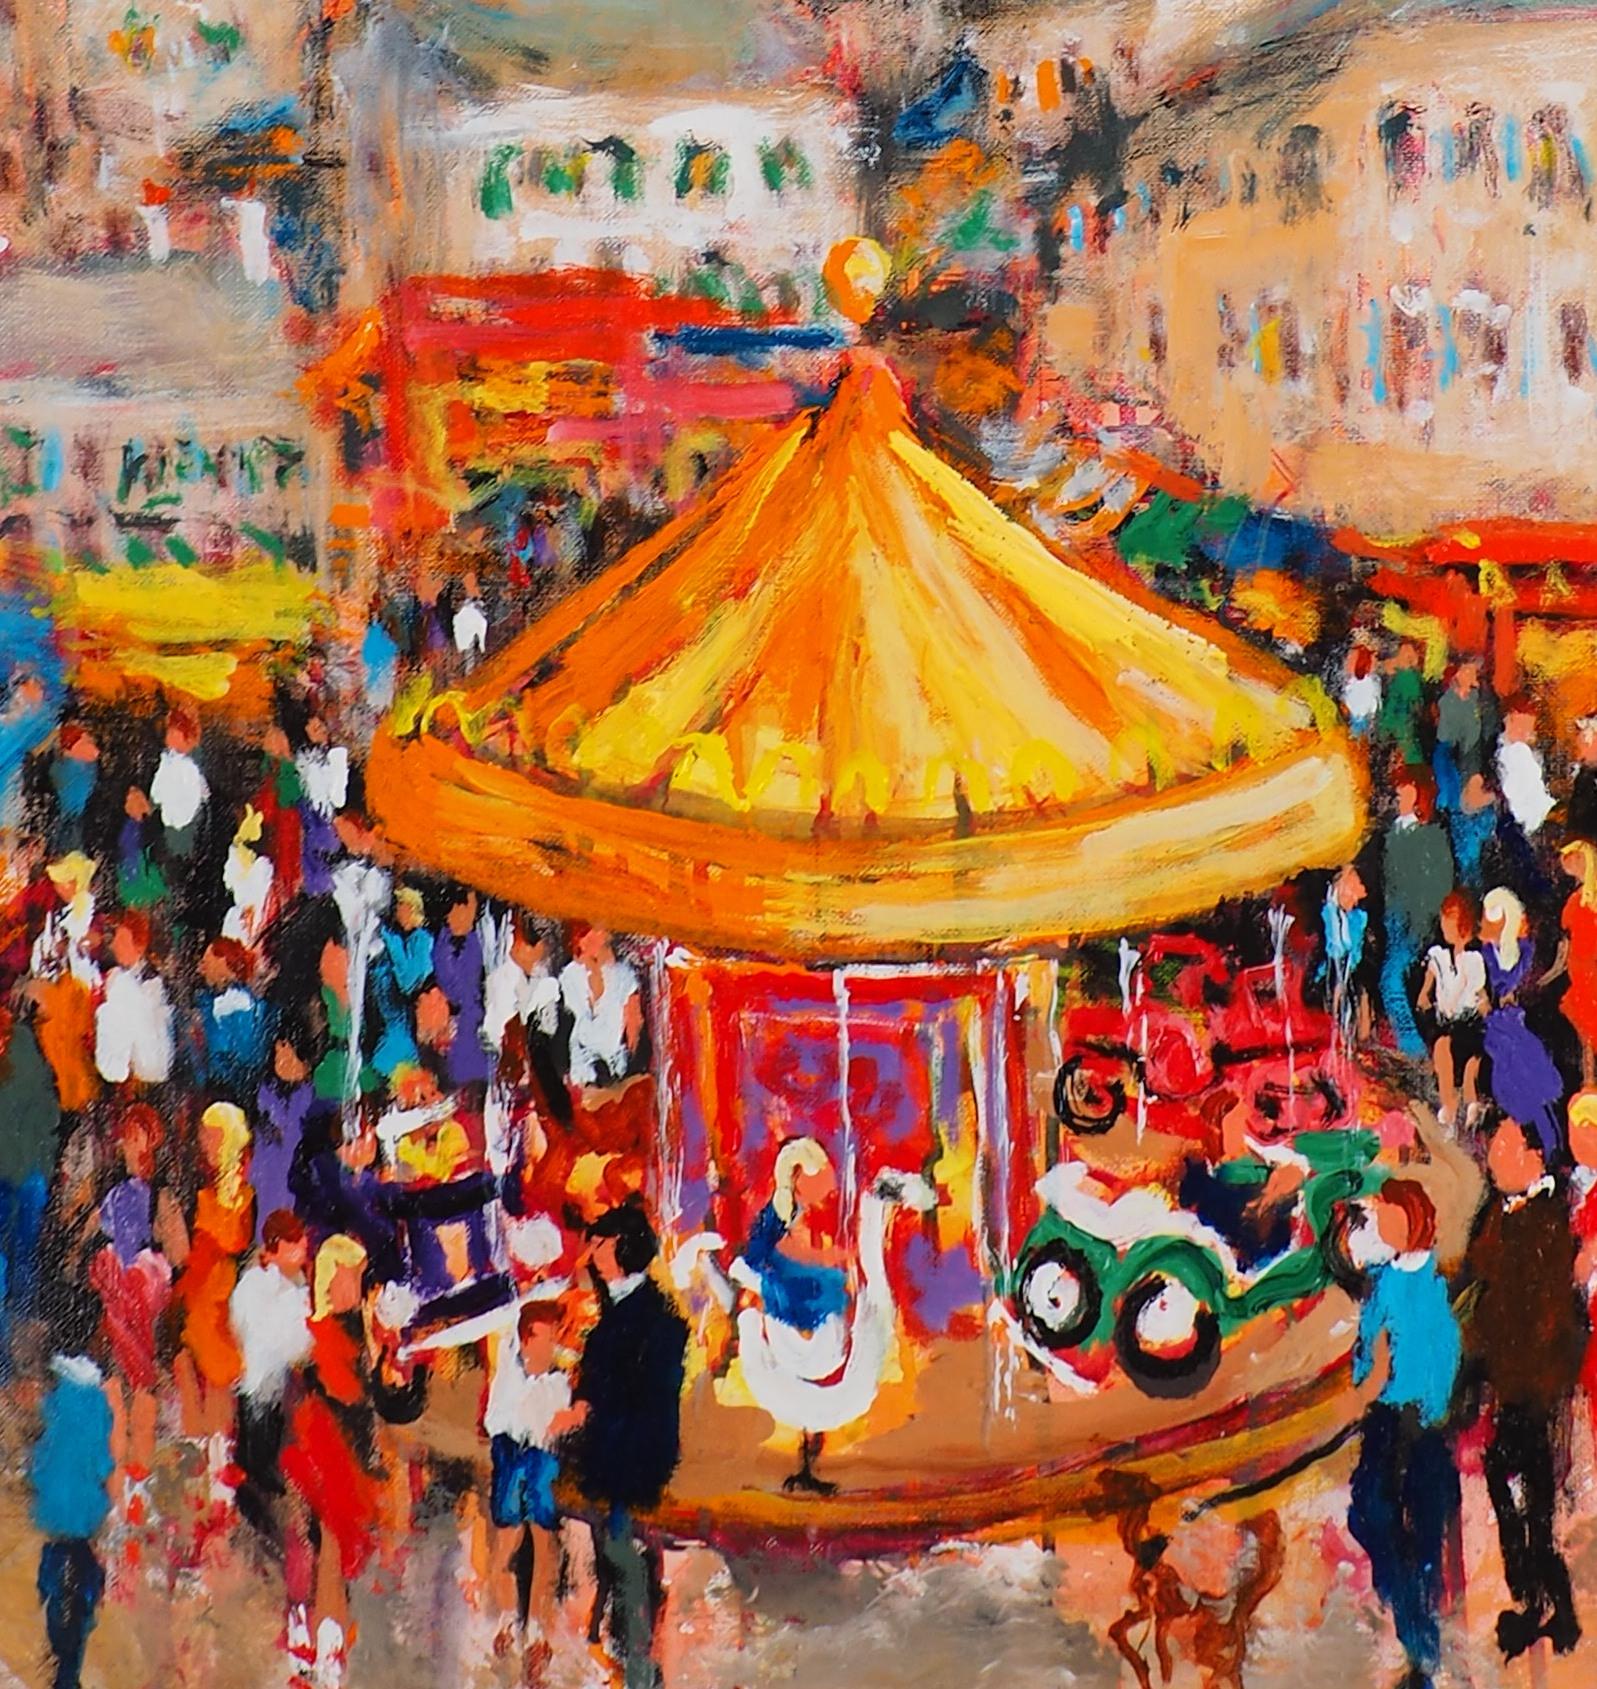 Paris : Fun Fair in Montmartre (Sacre Coeur) - Grande huile sur toile - Signé 1